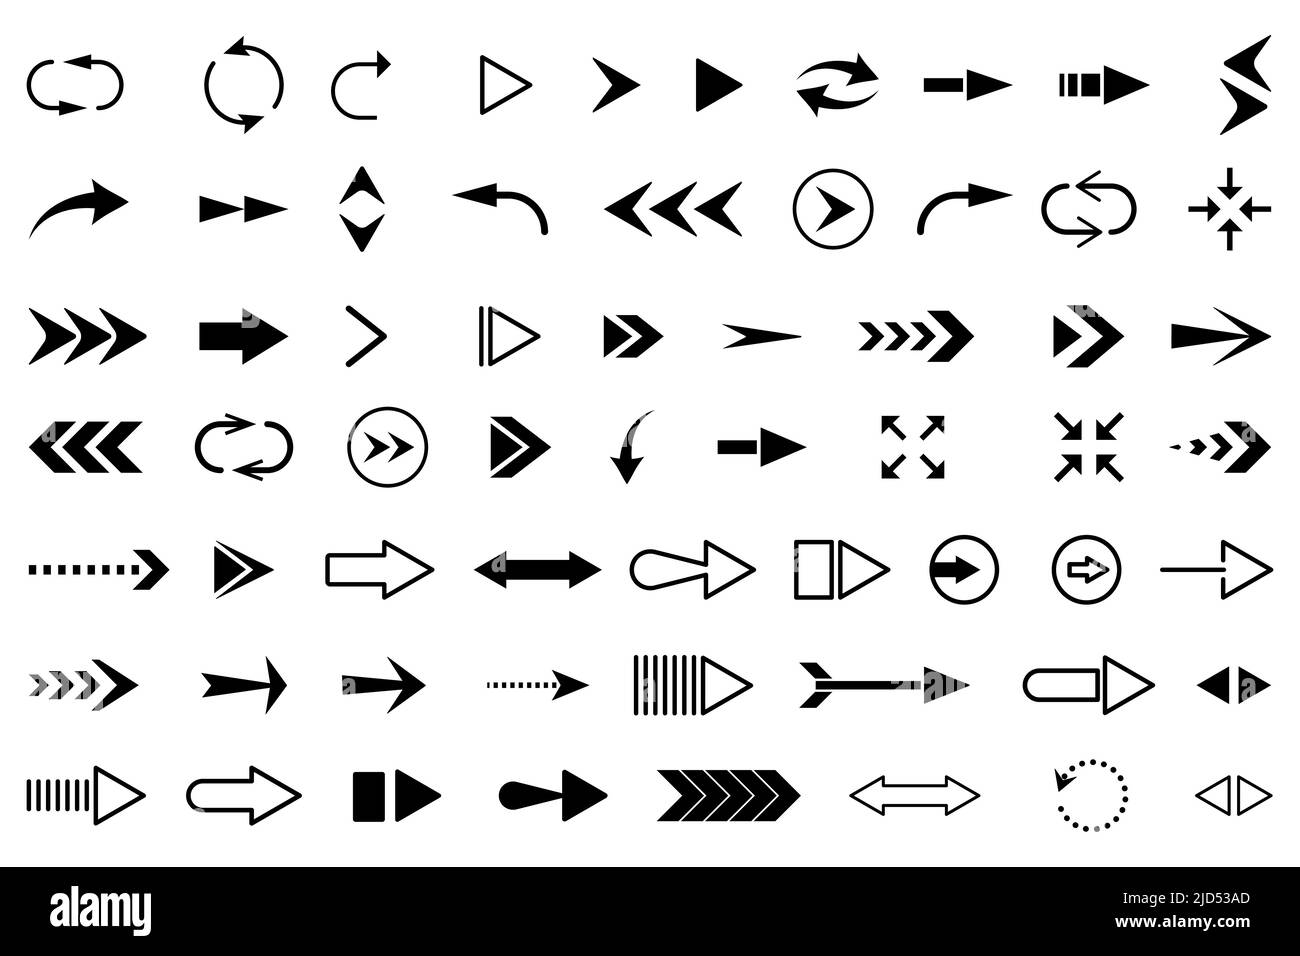 Conjunto de iconos de flecha. Colección moderna y sencilla de flechas. Ilustración de vector plano Ilustración del Vector